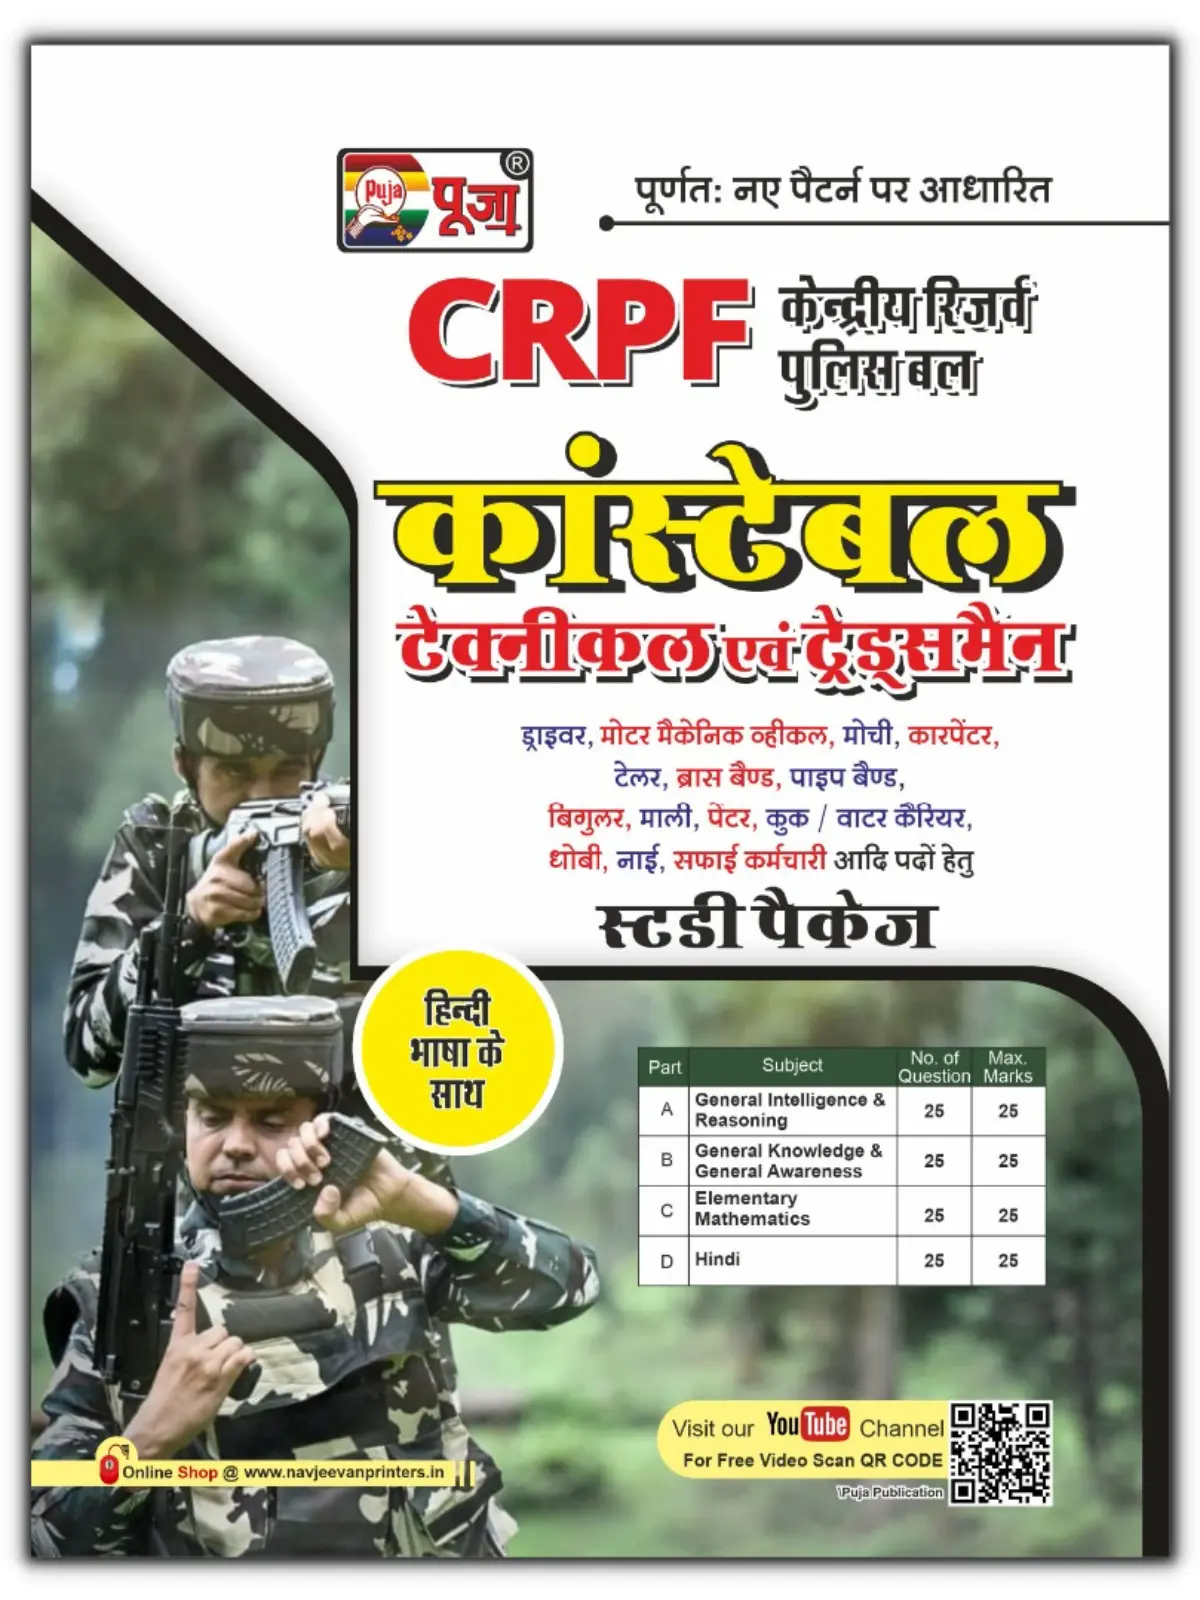 crpf-constable-technical-tradesmen-guidebook